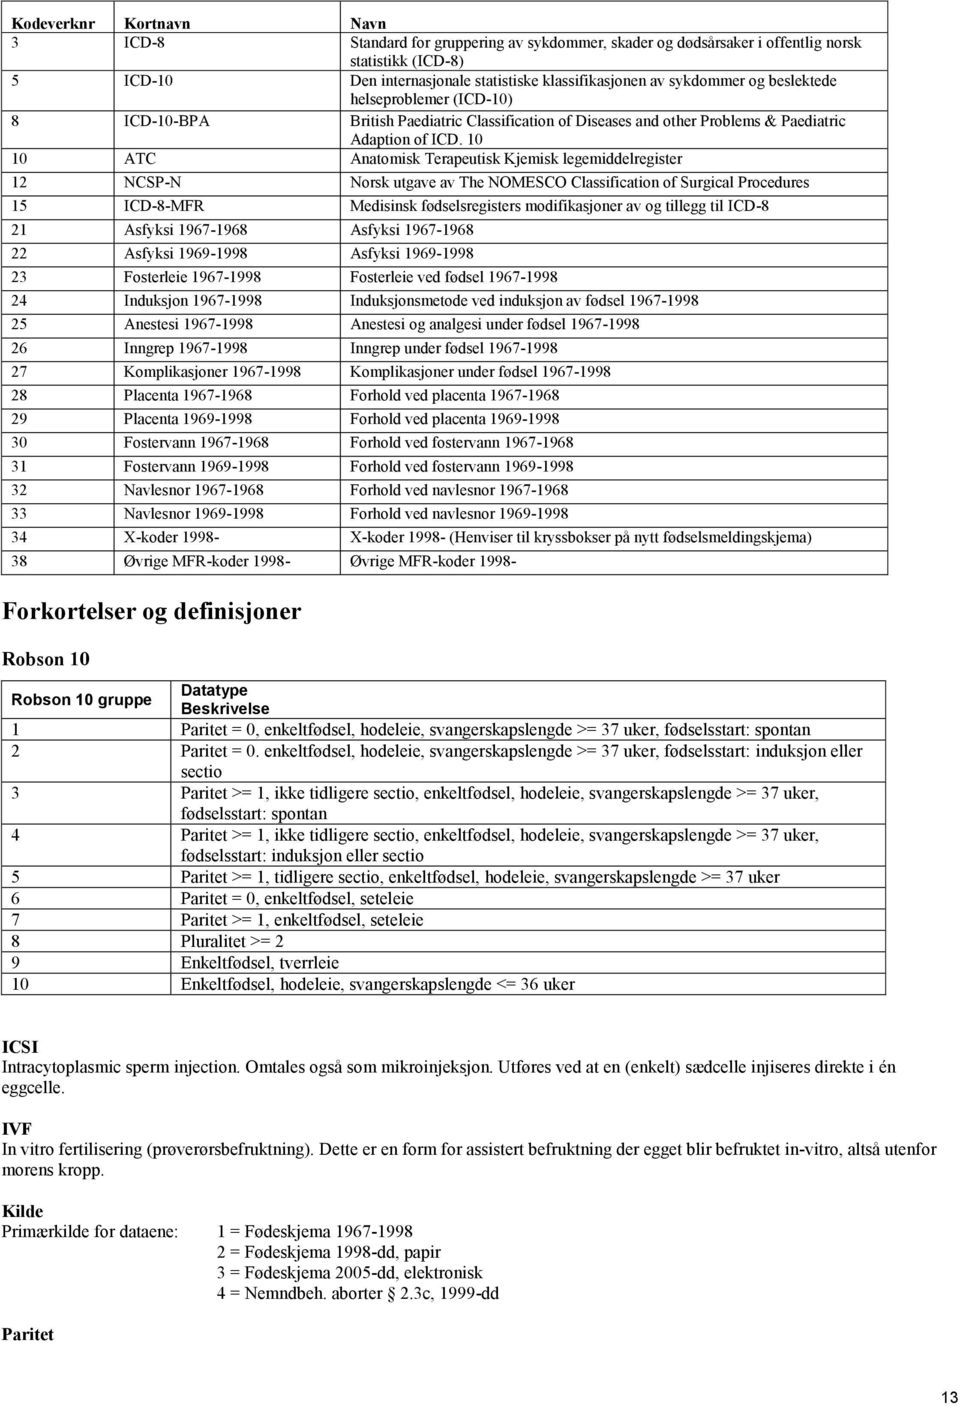 10 10 ATC Anatomisk Terapeutisk Kjemisk legemiddelregister 12 NCSP-N Norsk utgave av The NOMESCO Classification of Surgical Procedures 15 ICD-8-MFR Medisinsk fødselsregisters modifikasjoner av og